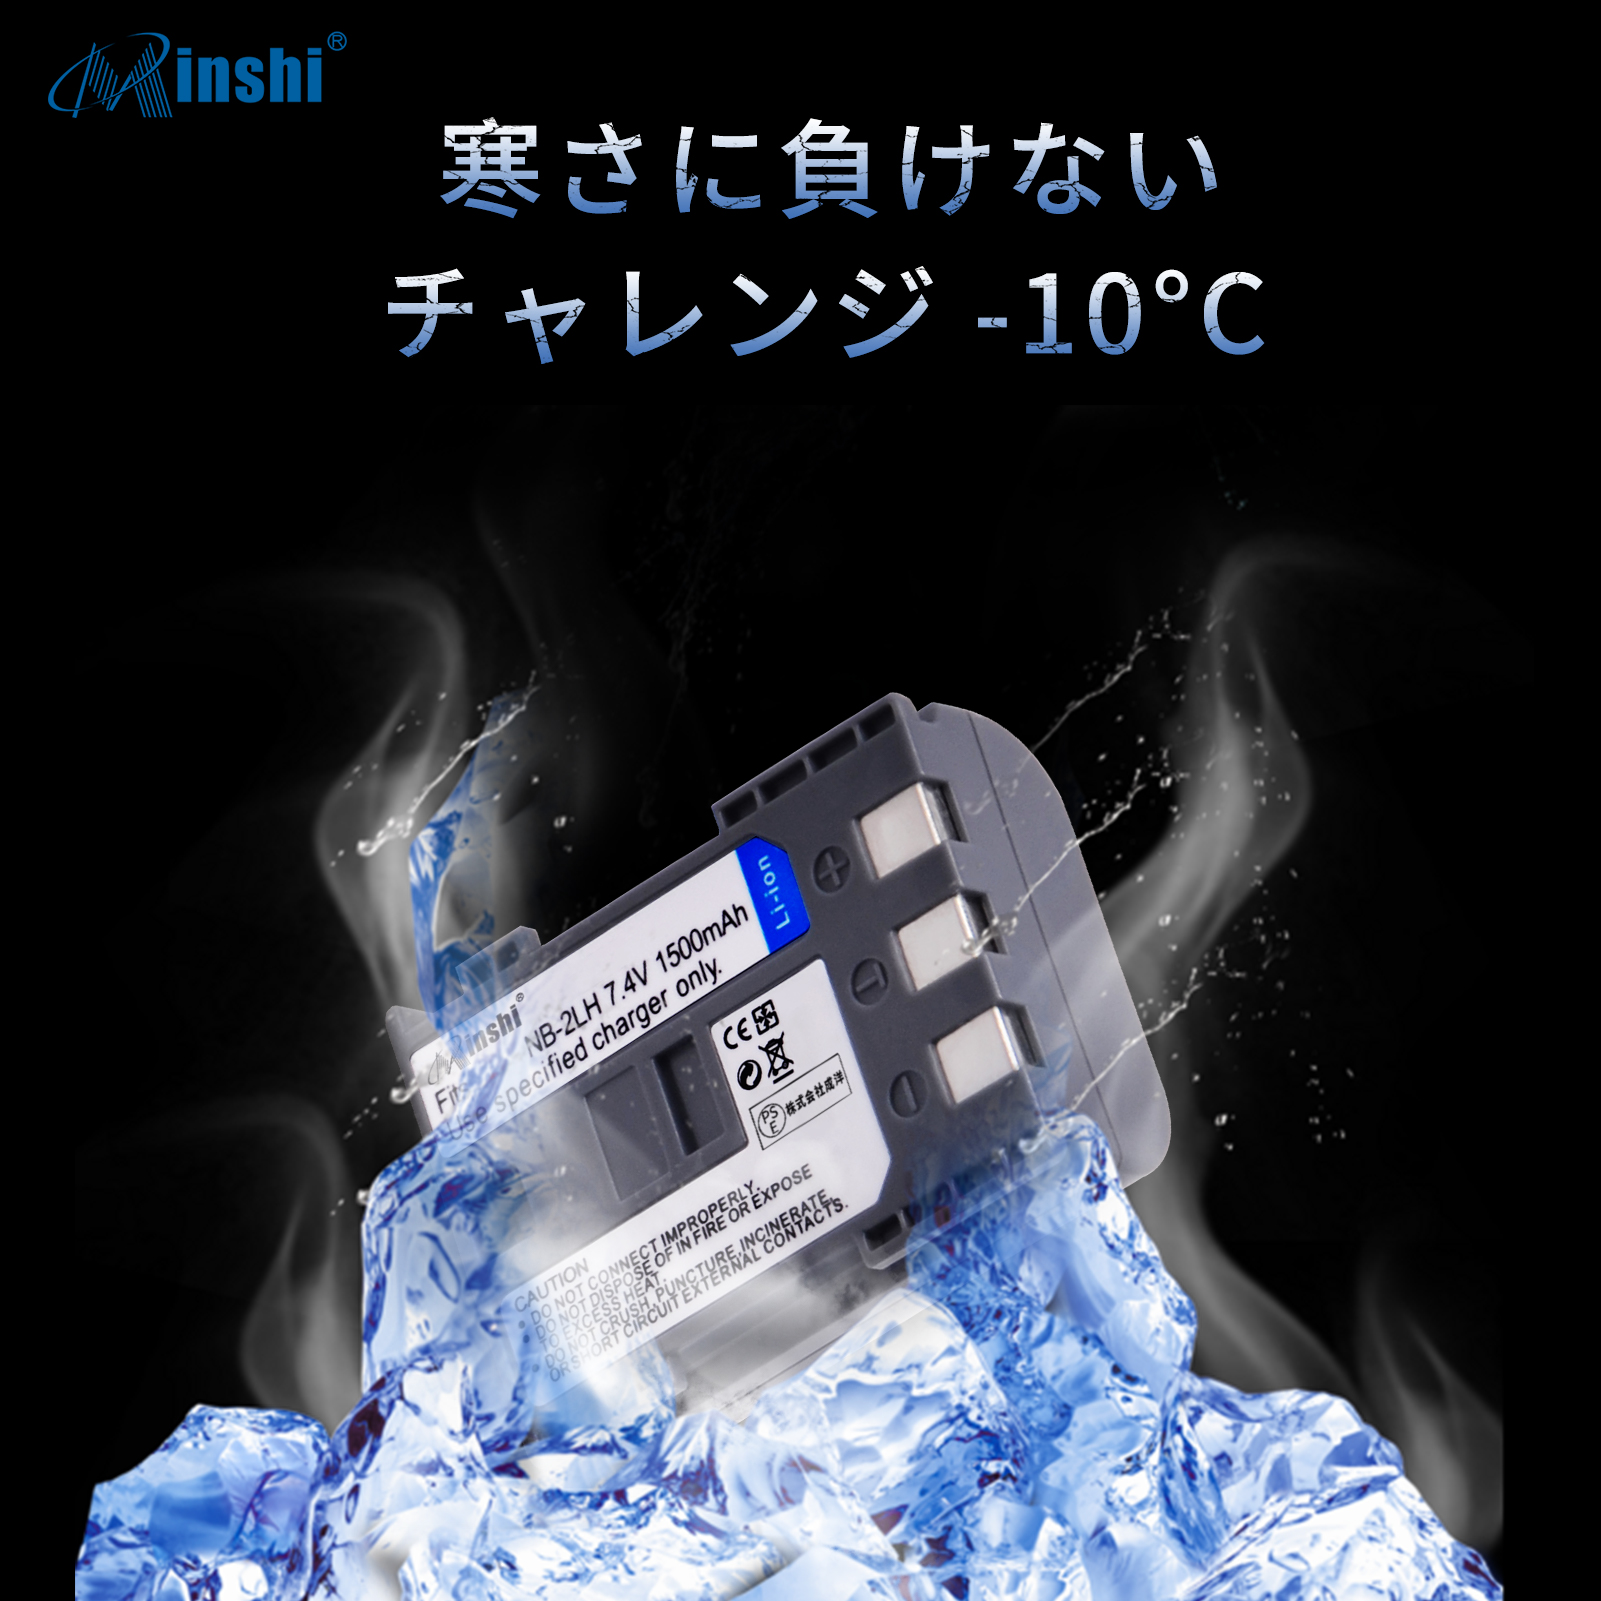 特典 【4個セット&2個充電器】minshi EOS IX 対応 NB-2L互換バッテリー 1500mAh 高品質交換バッテリー